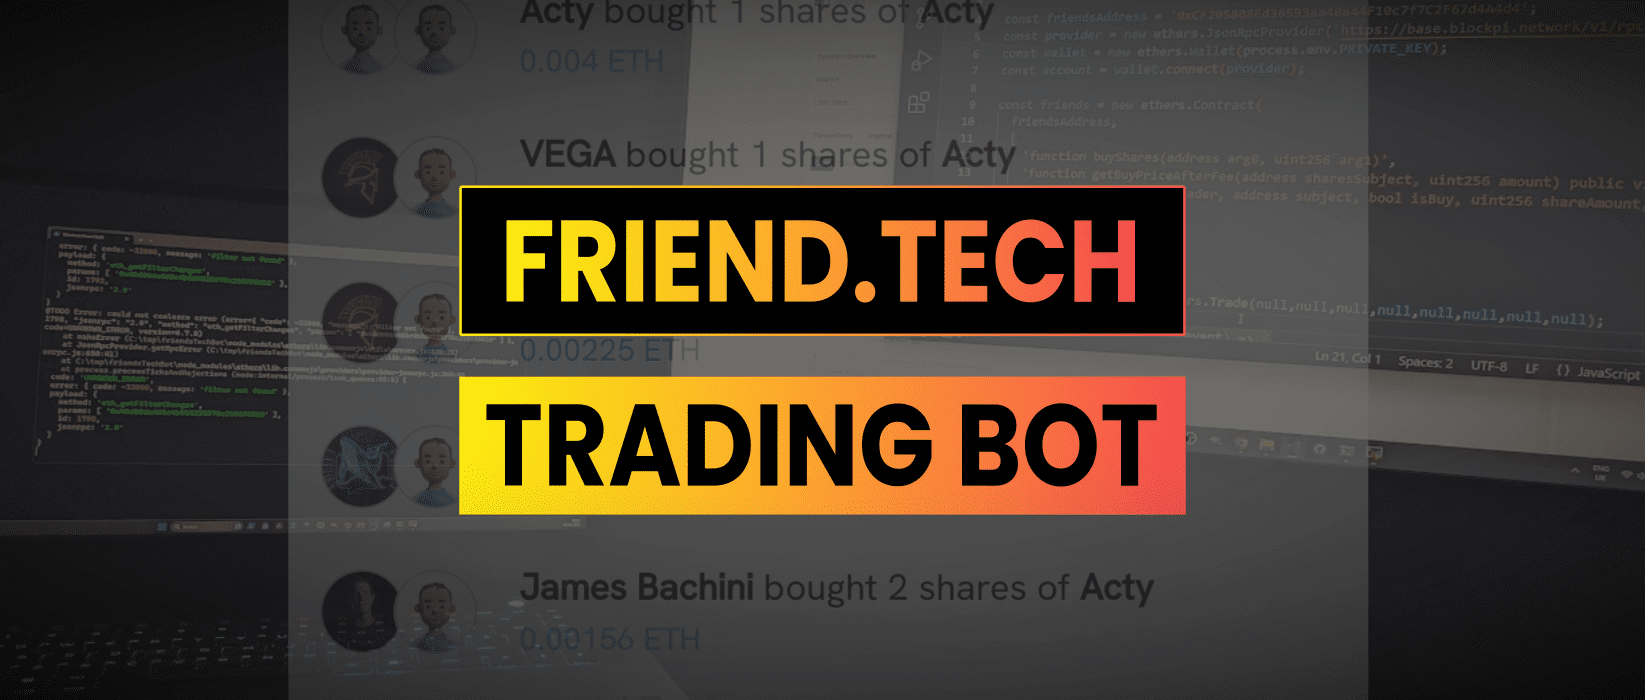 Friend.Tech Trading Bot